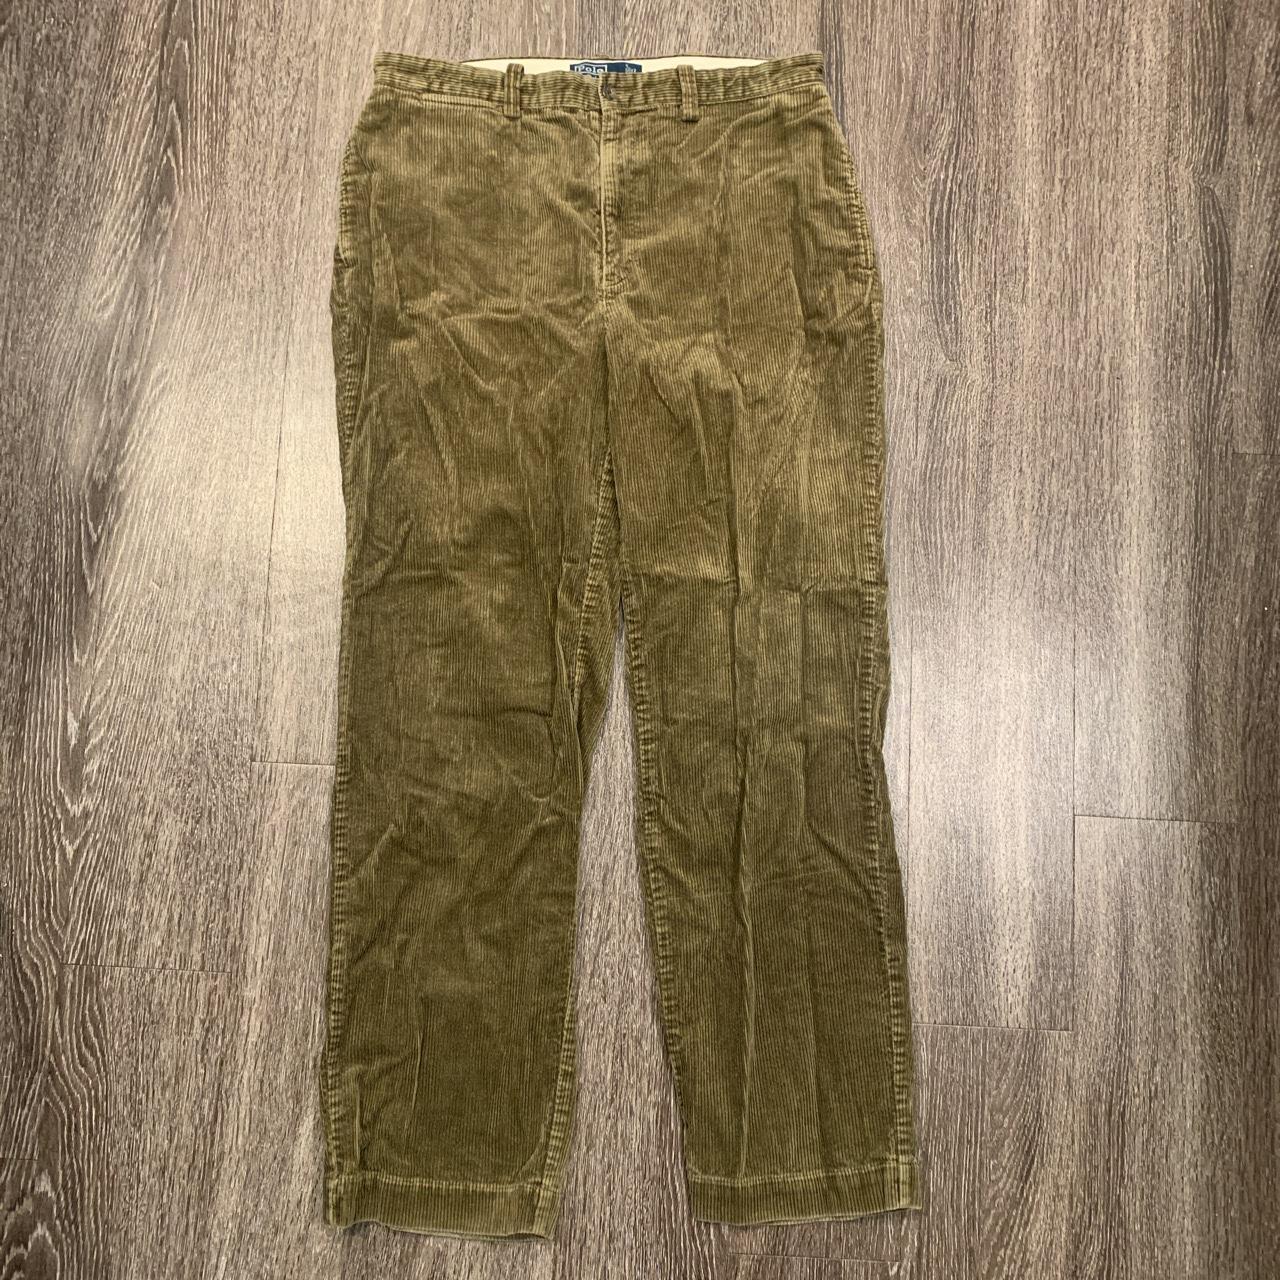 Polo corduroy pants. Nice fit pretty baggy size 34x32 - Depop